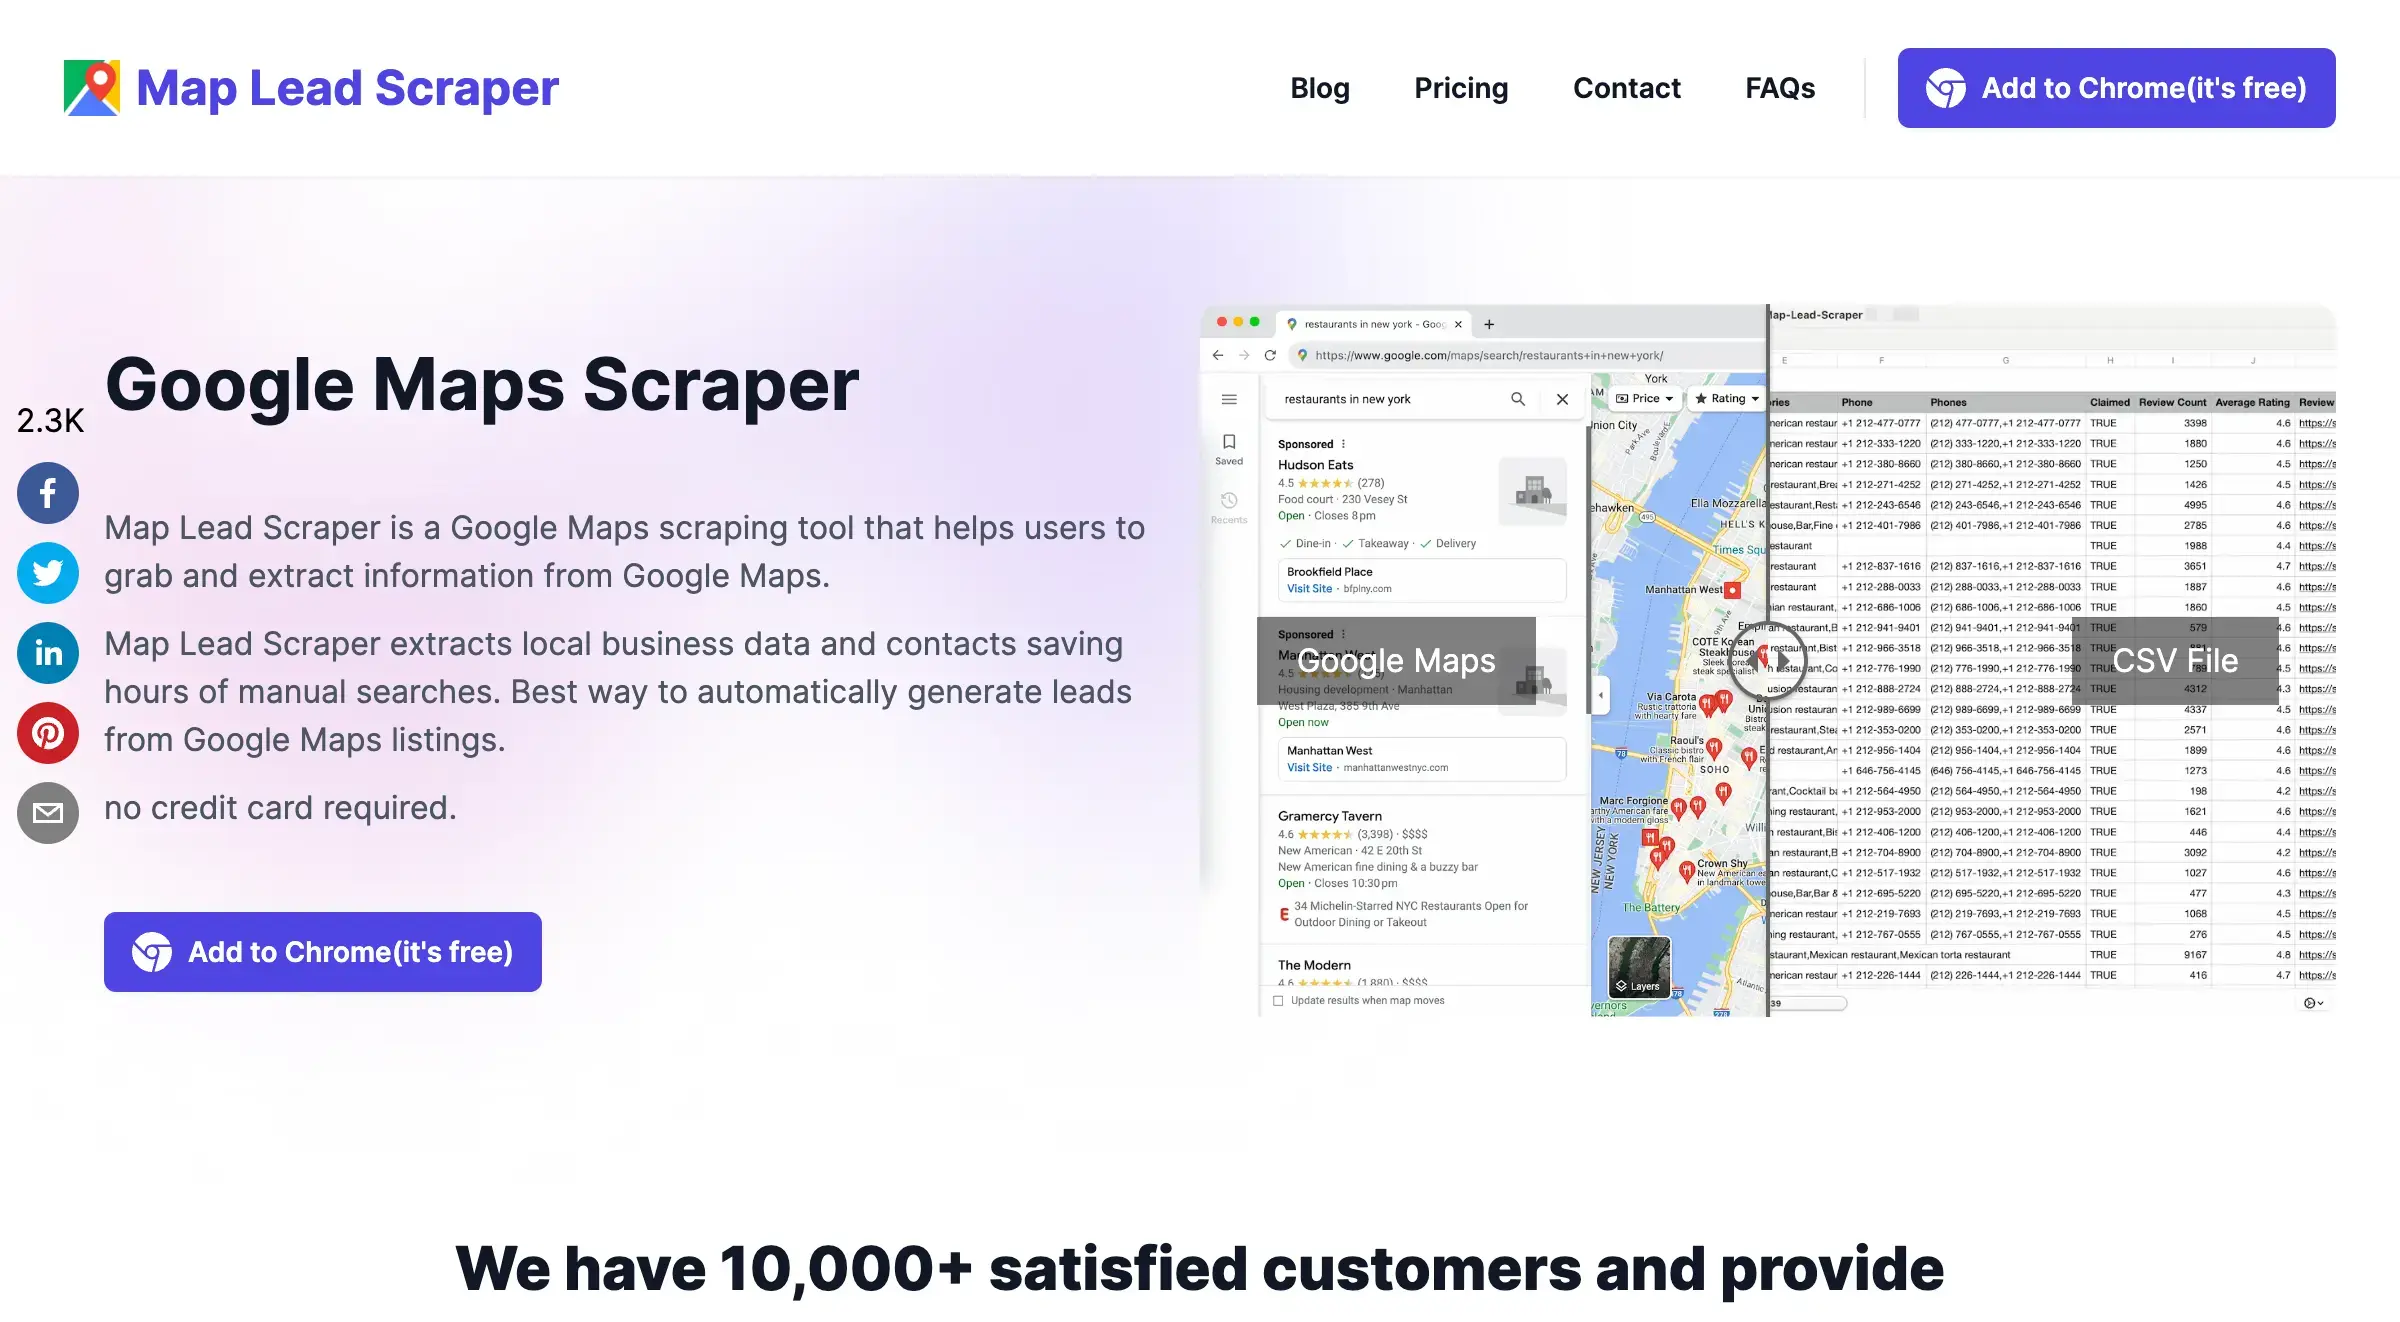 Google Maps Scraper: Free B2B Leads Finder | Map Lead Scraper